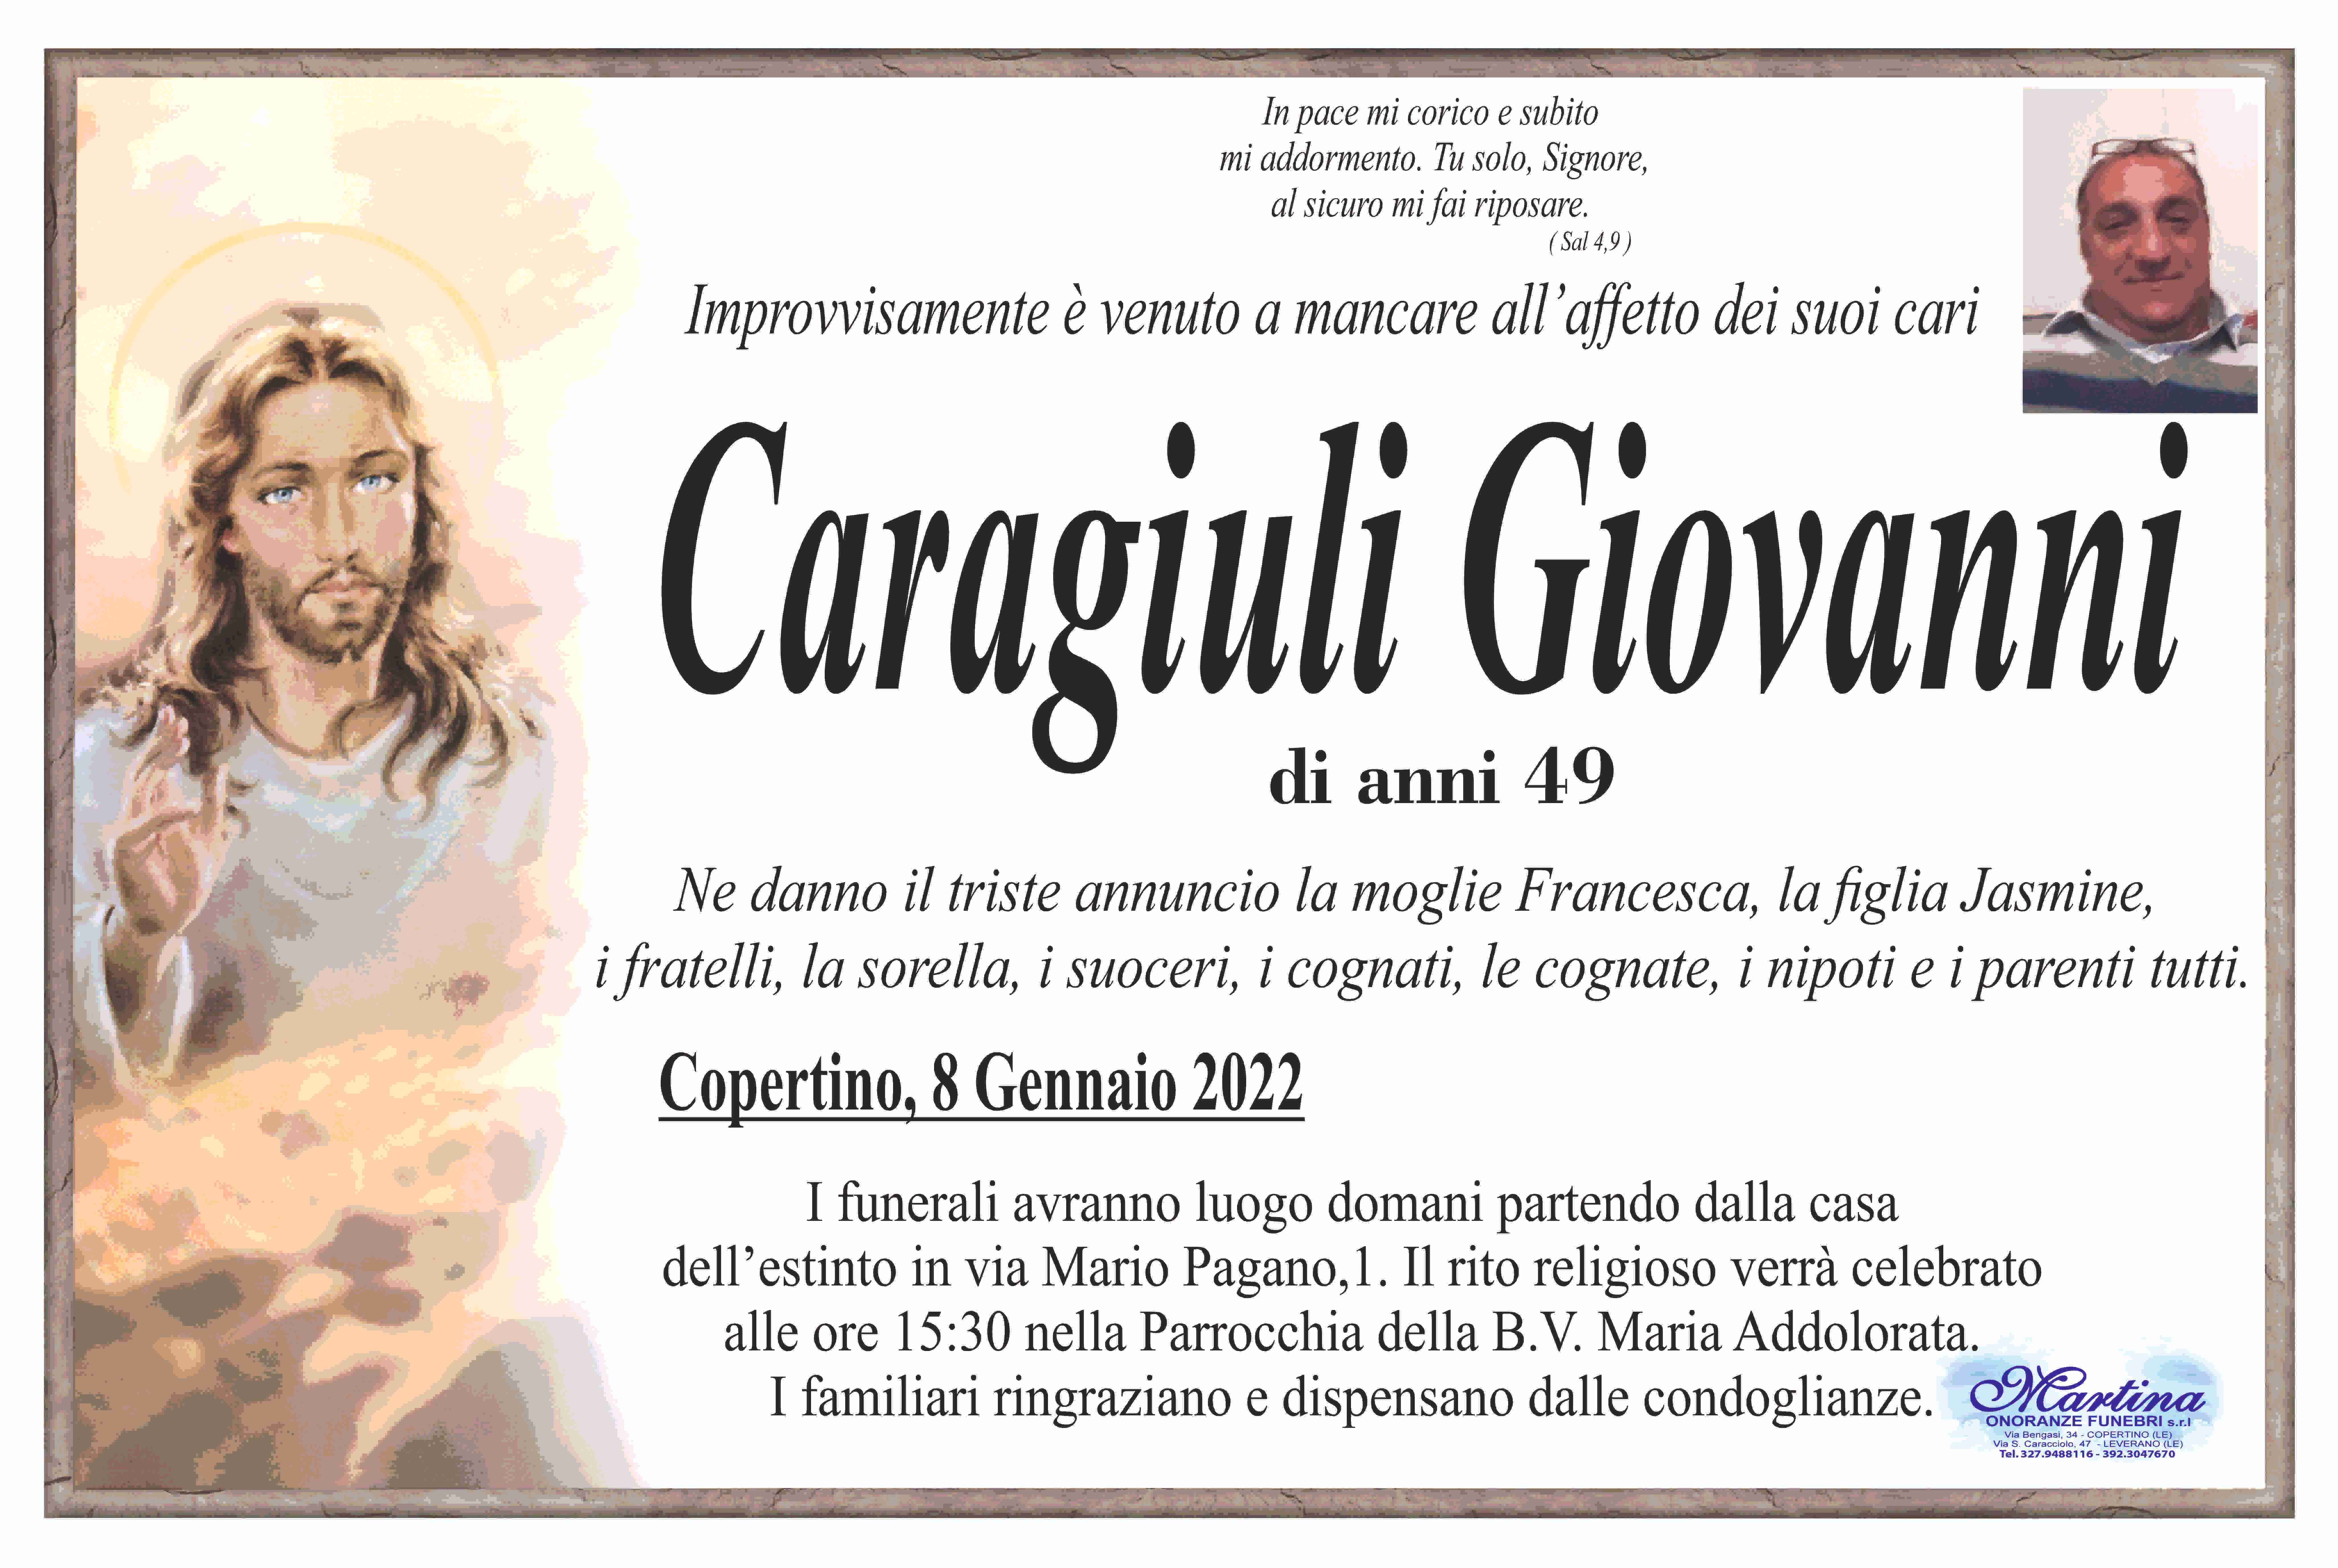 Giovanni Caragiuli